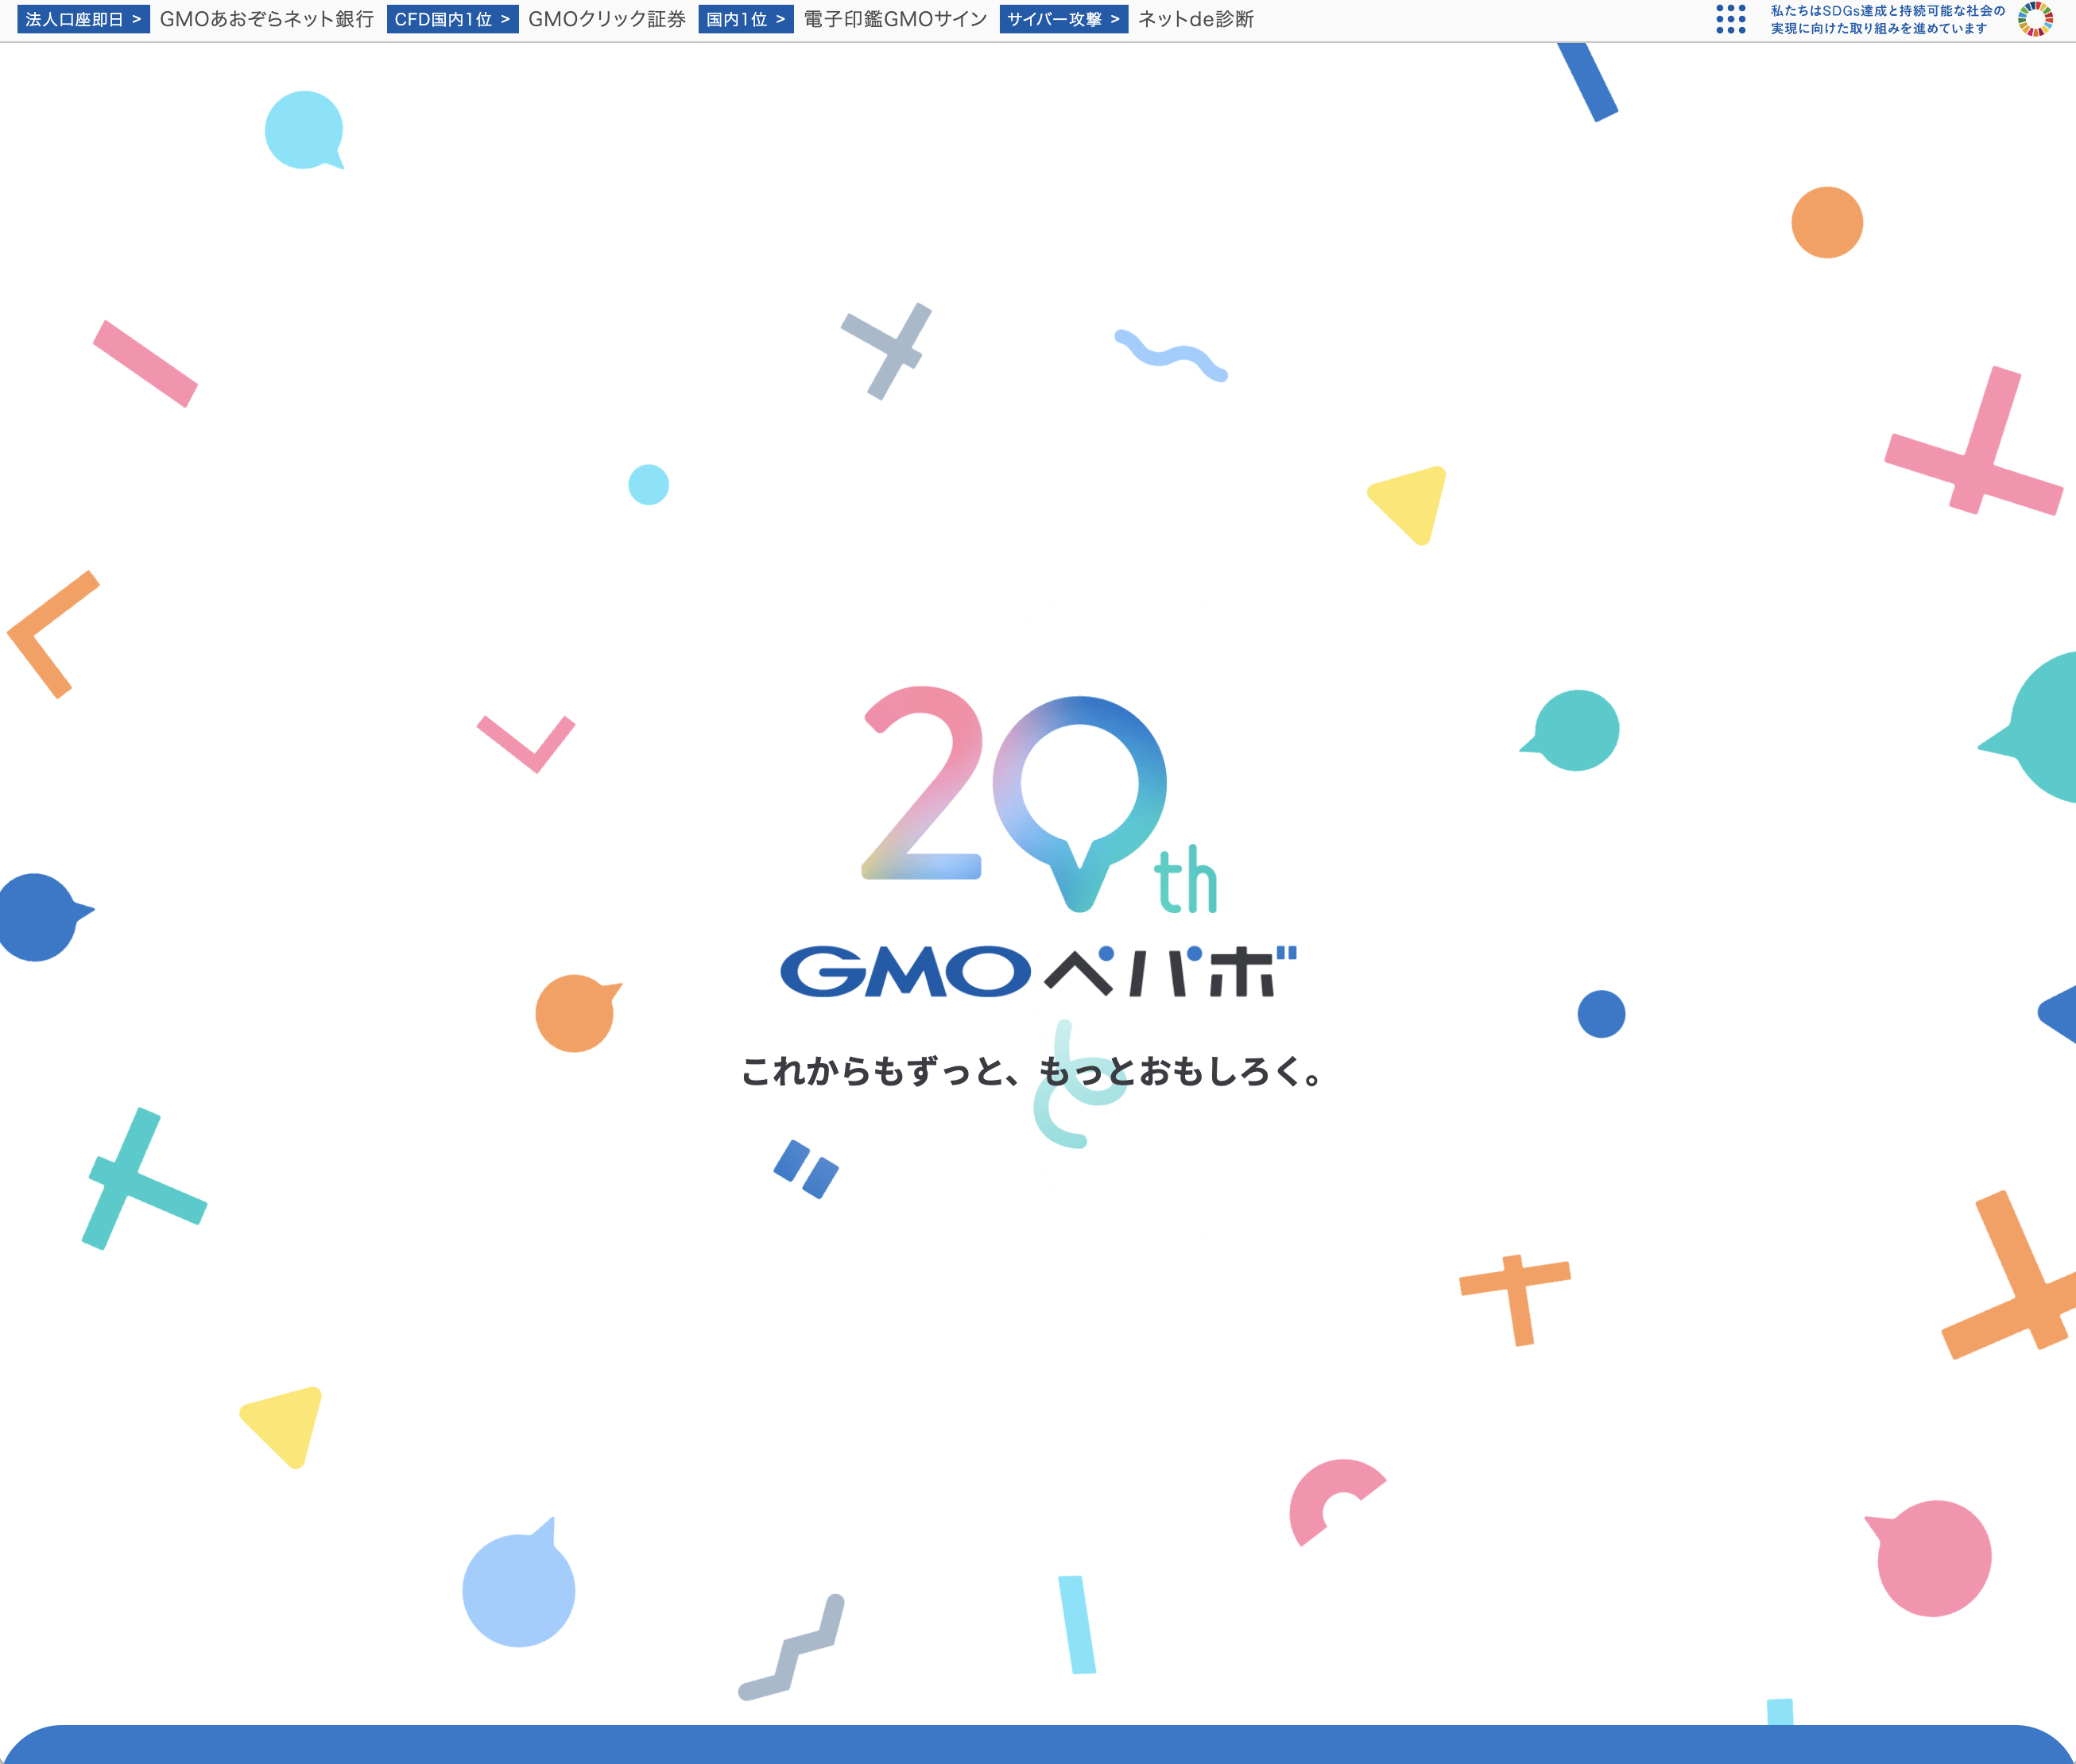 GMOペパボ株式会社 20周年特設サイト